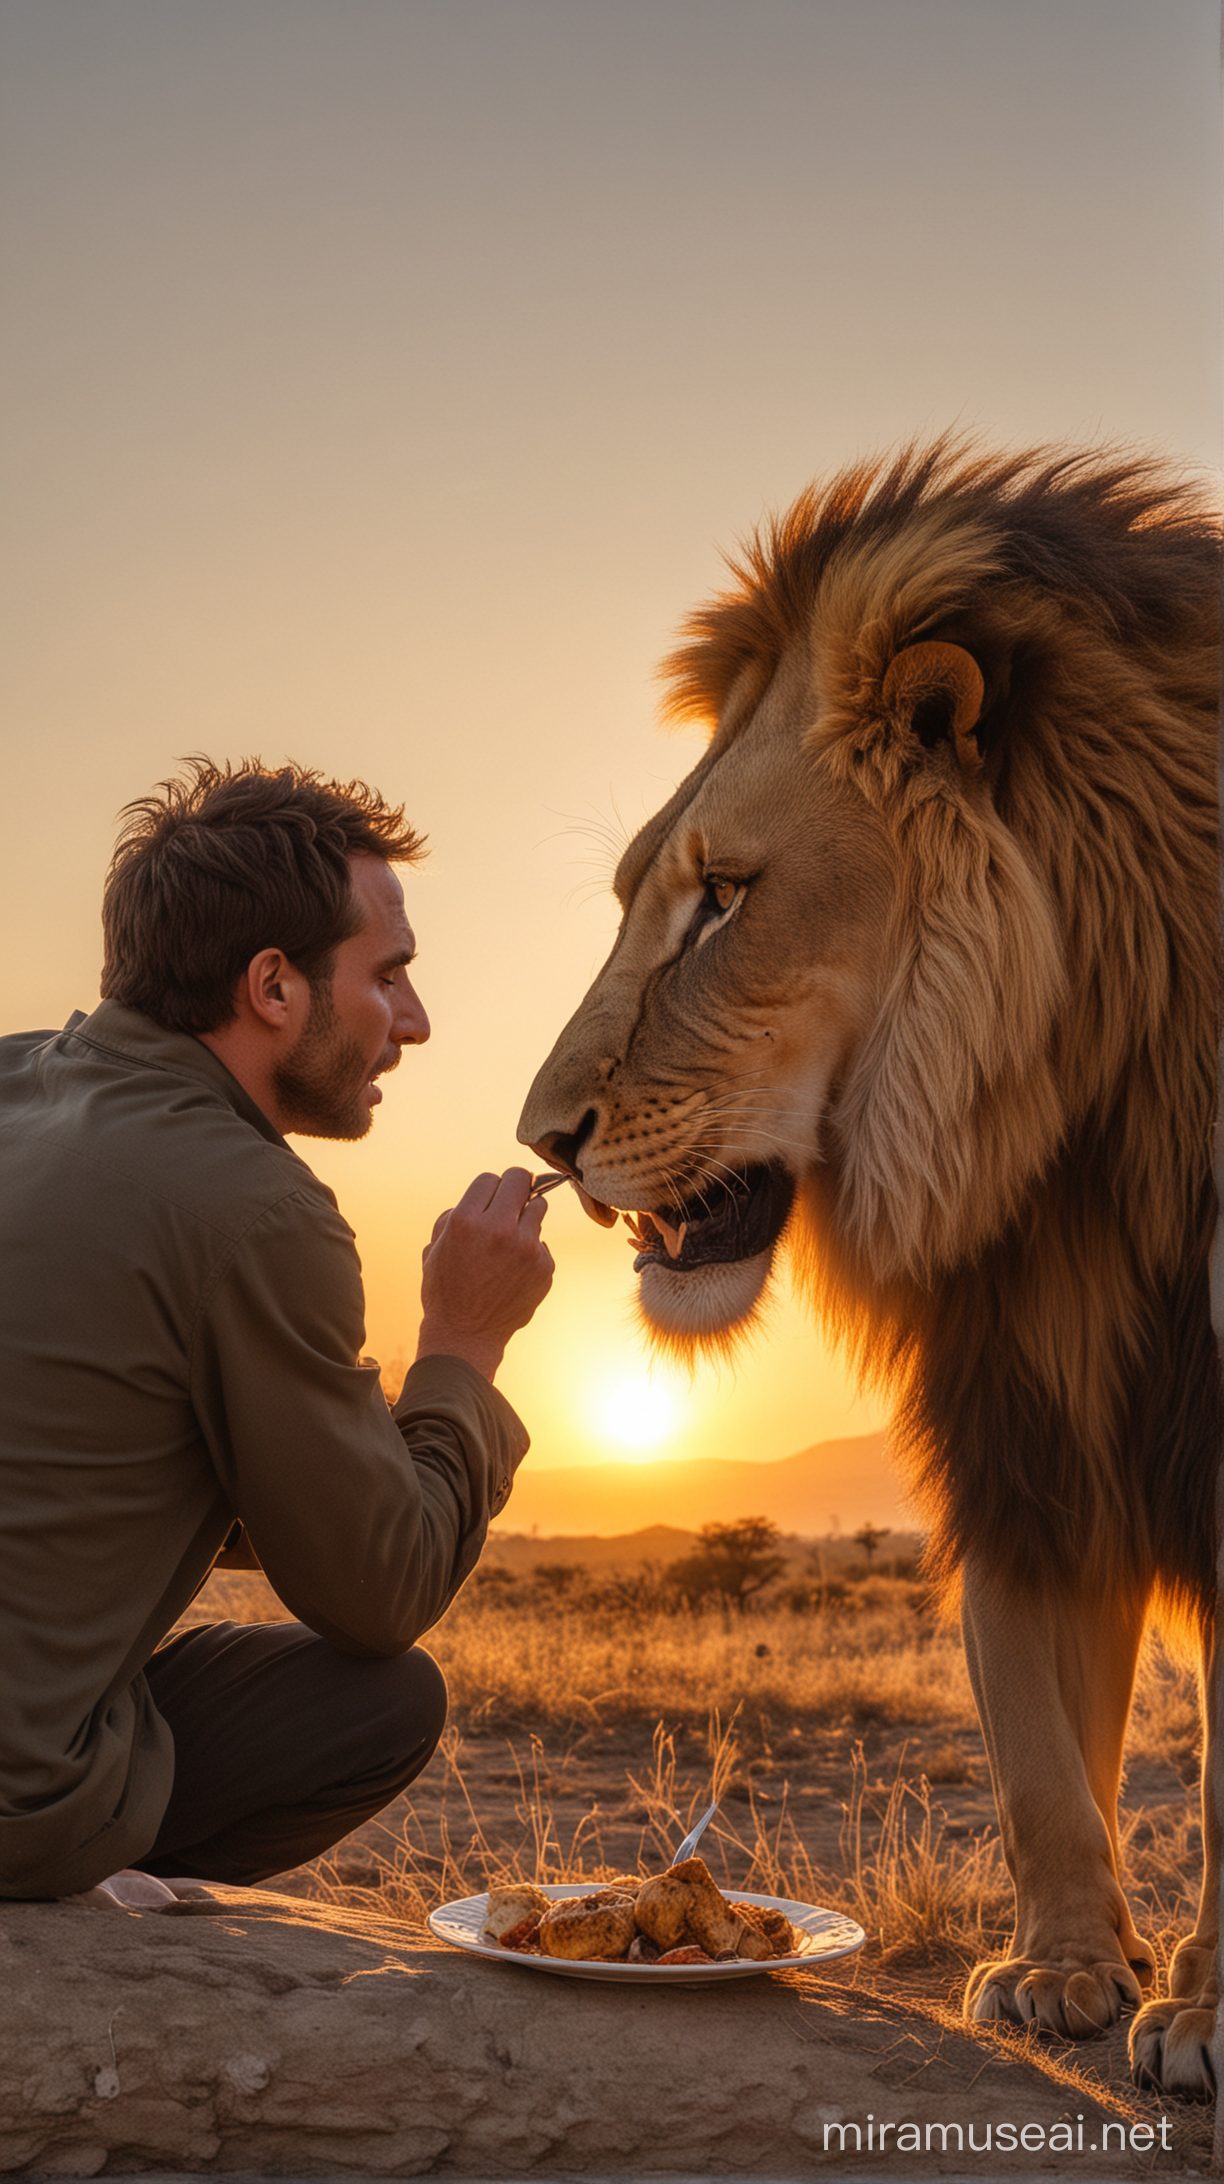 Man Eating Lion at Sunset